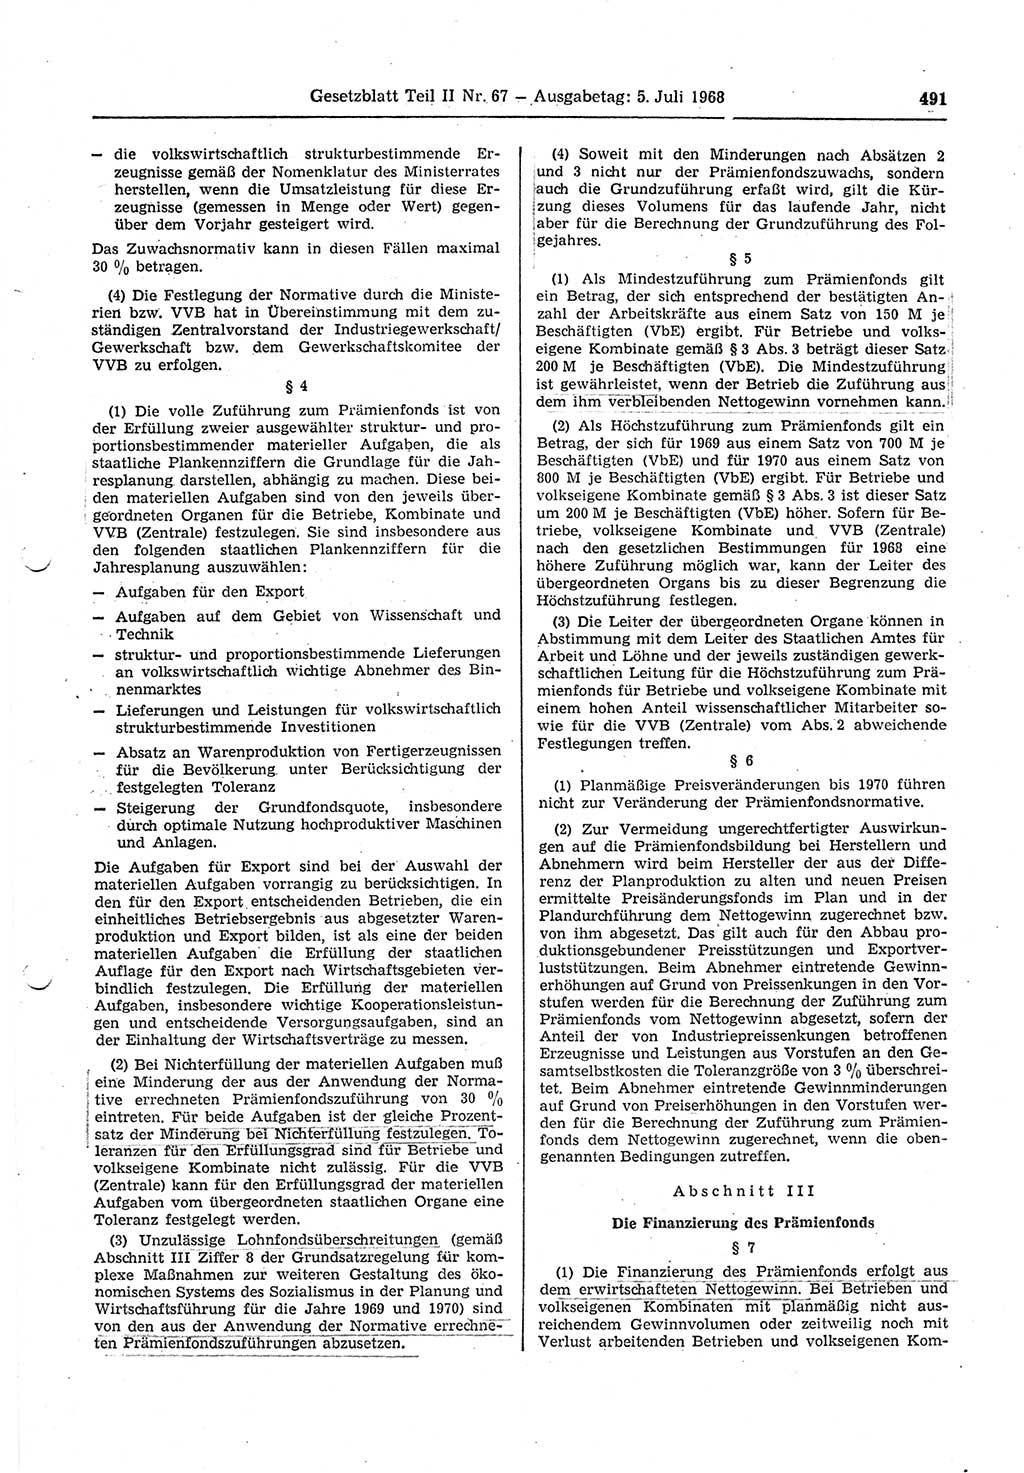 Gesetzblatt (GBl.) der Deutschen Demokratischen Republik (DDR) Teil ⅠⅠ 1968, Seite 491 (GBl. DDR ⅠⅠ 1968, S. 491)